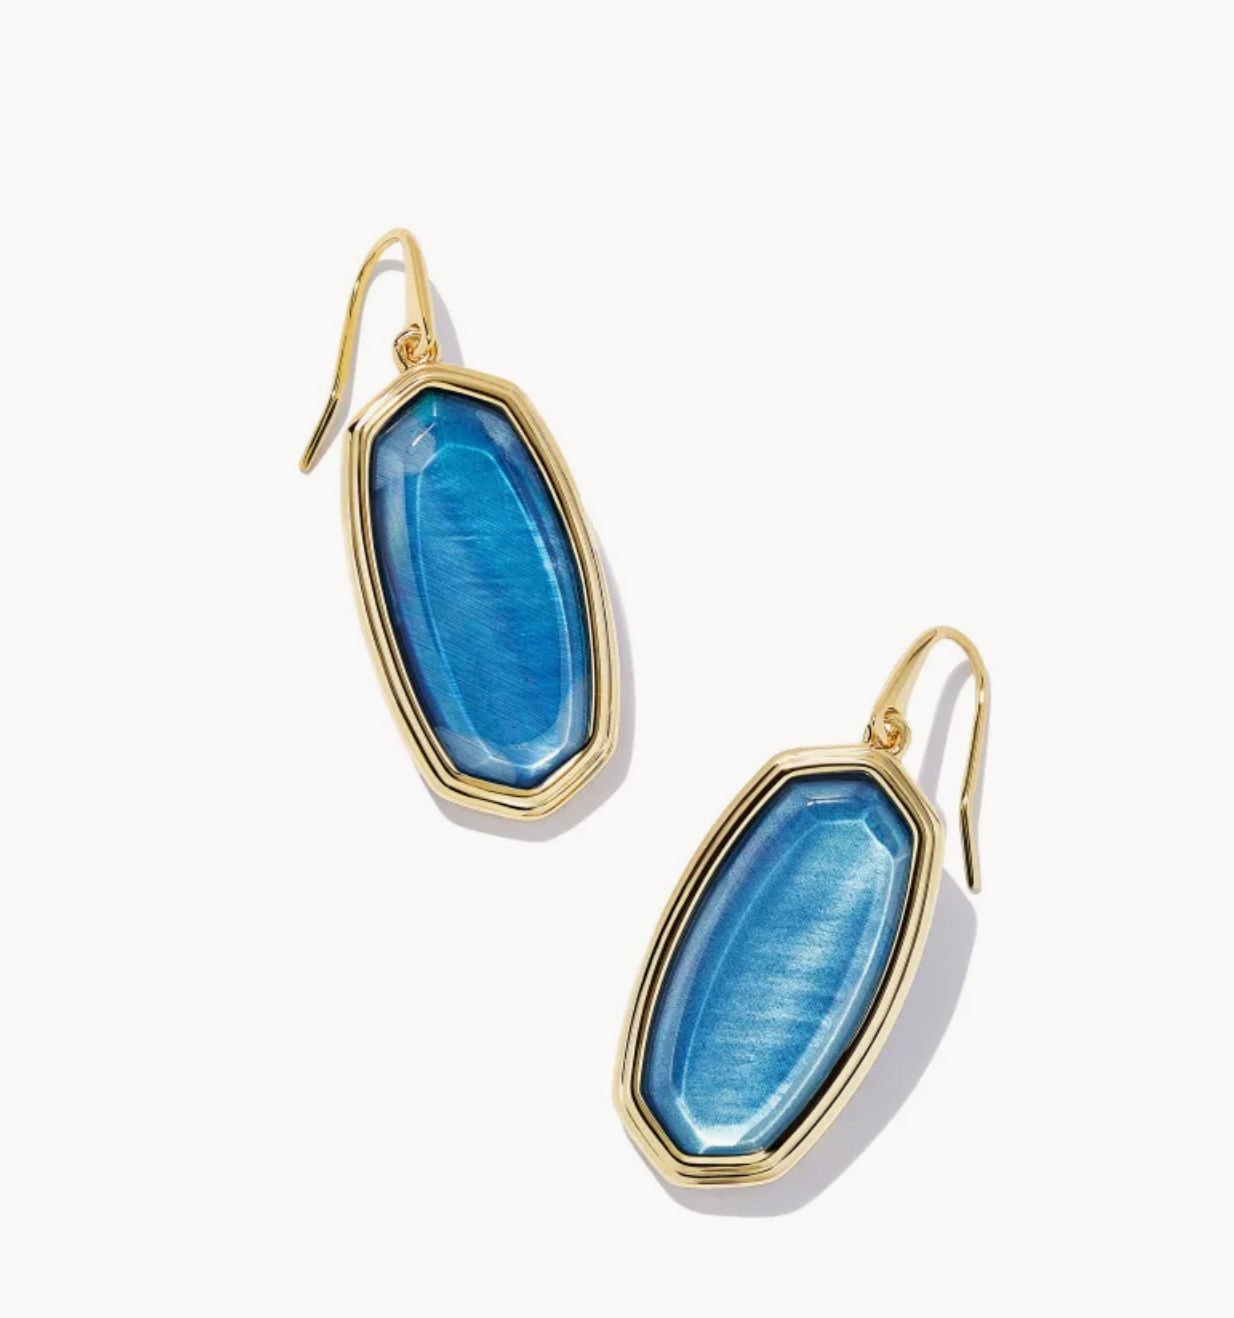 Kendra Scott Framed Elle Gold Drop Earrings in Dark Blue Mother-of-Pearl